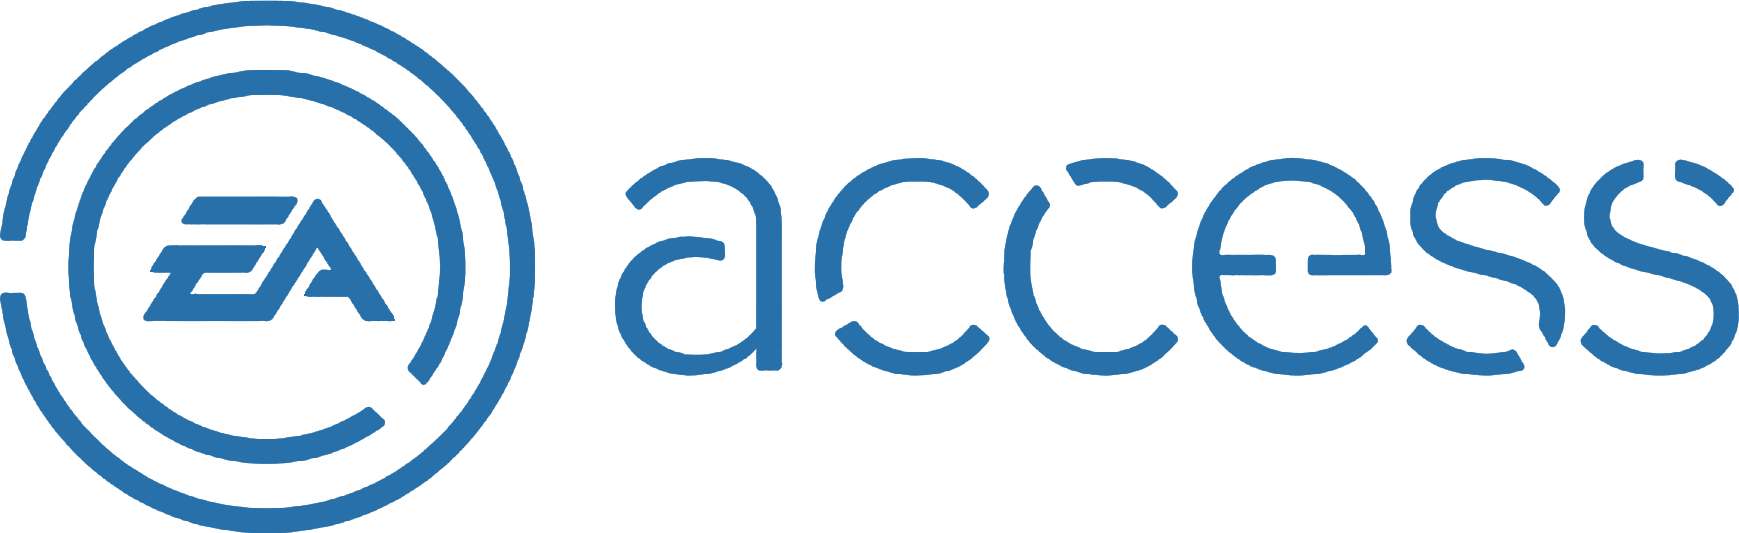 Eaaccess - Ea Access Logo Png (1739x533), Png Download